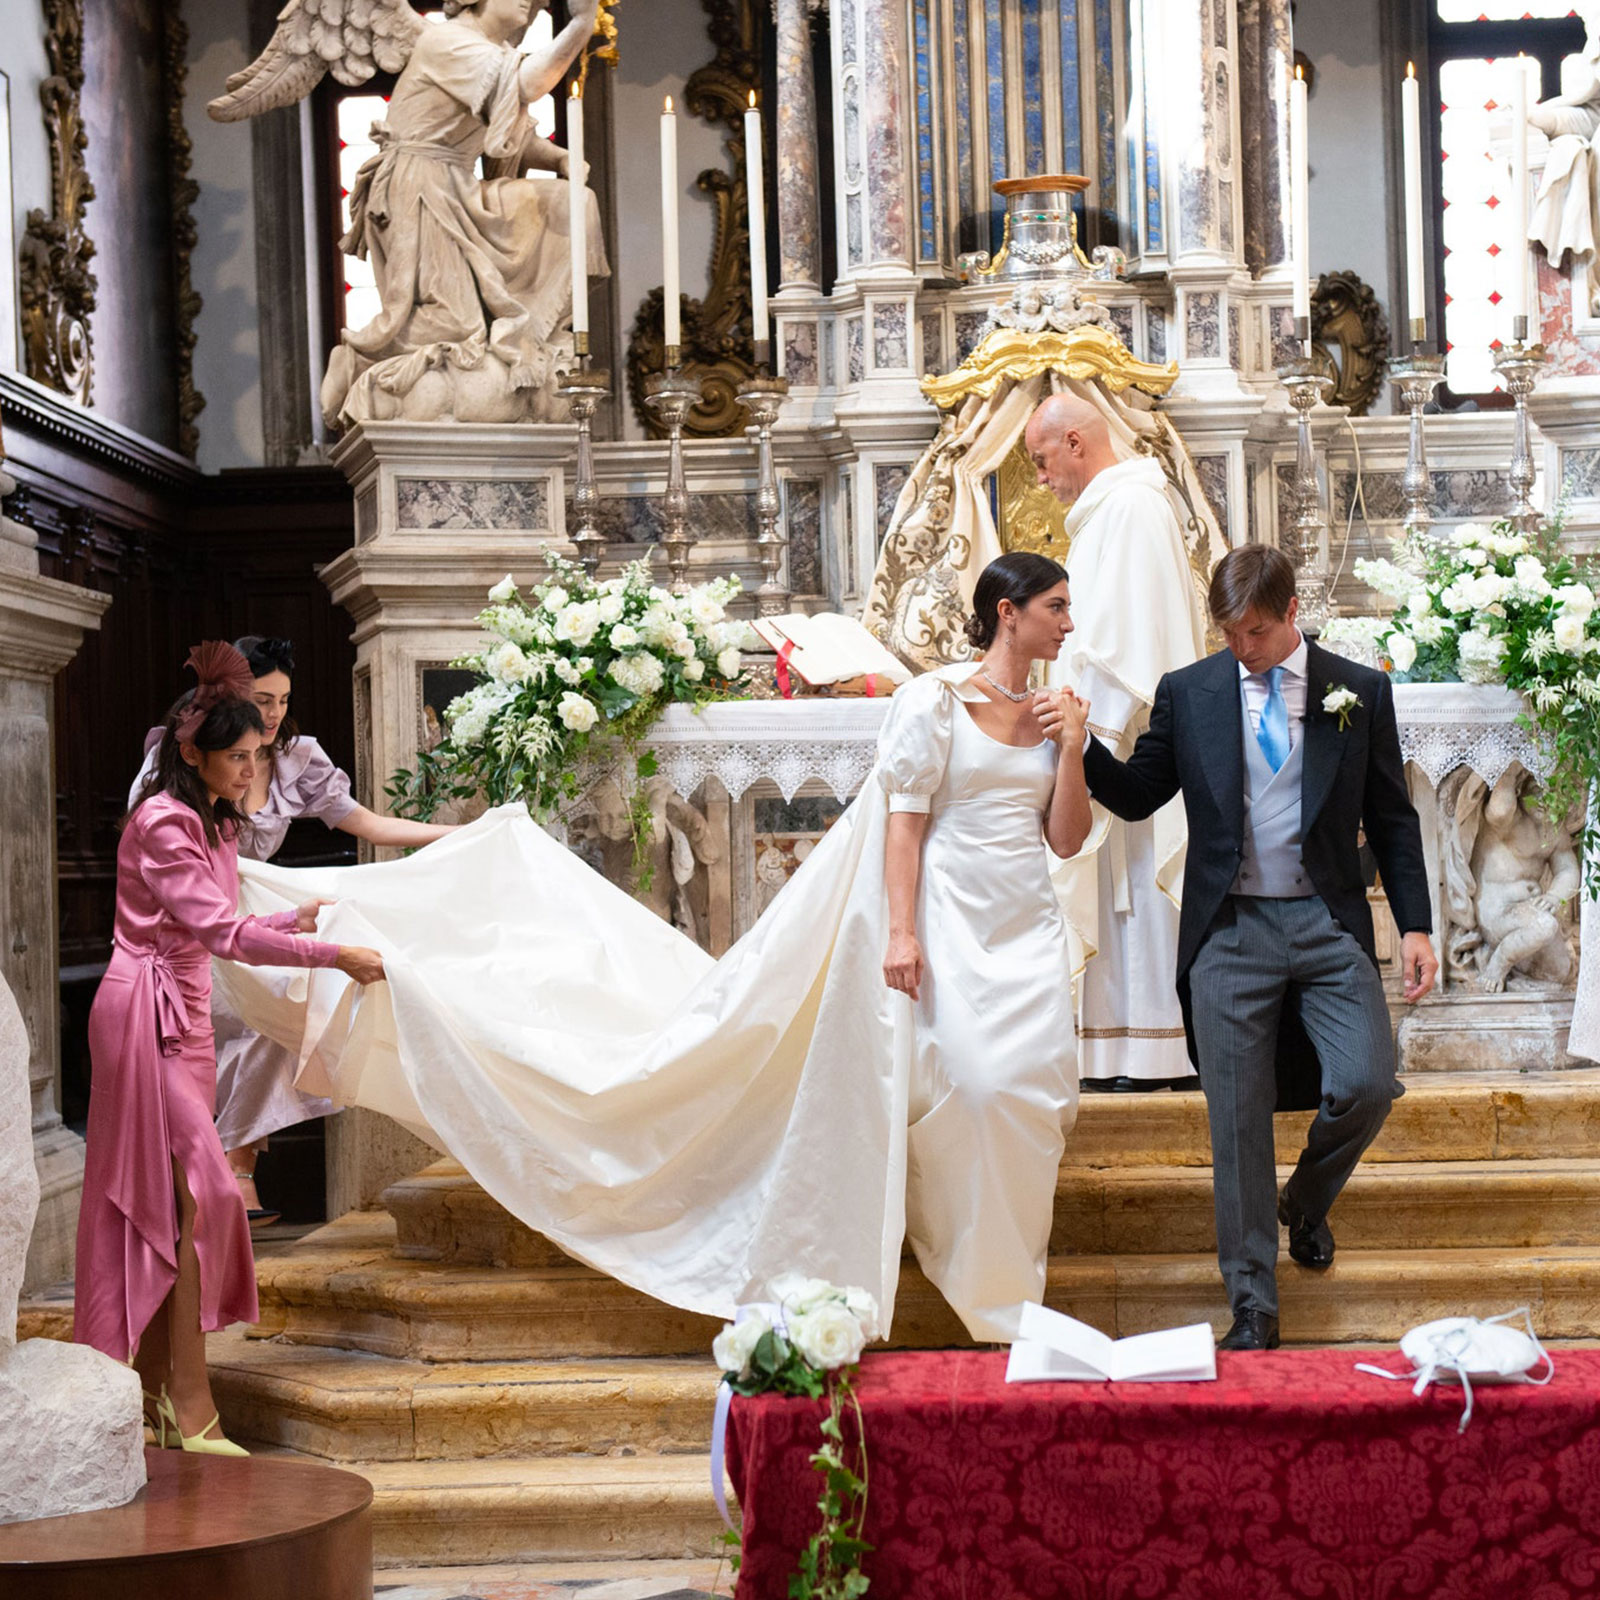 Silvia Bortolotto and Giorgio Mondini's wedding in Venice organised by The Wedding Club